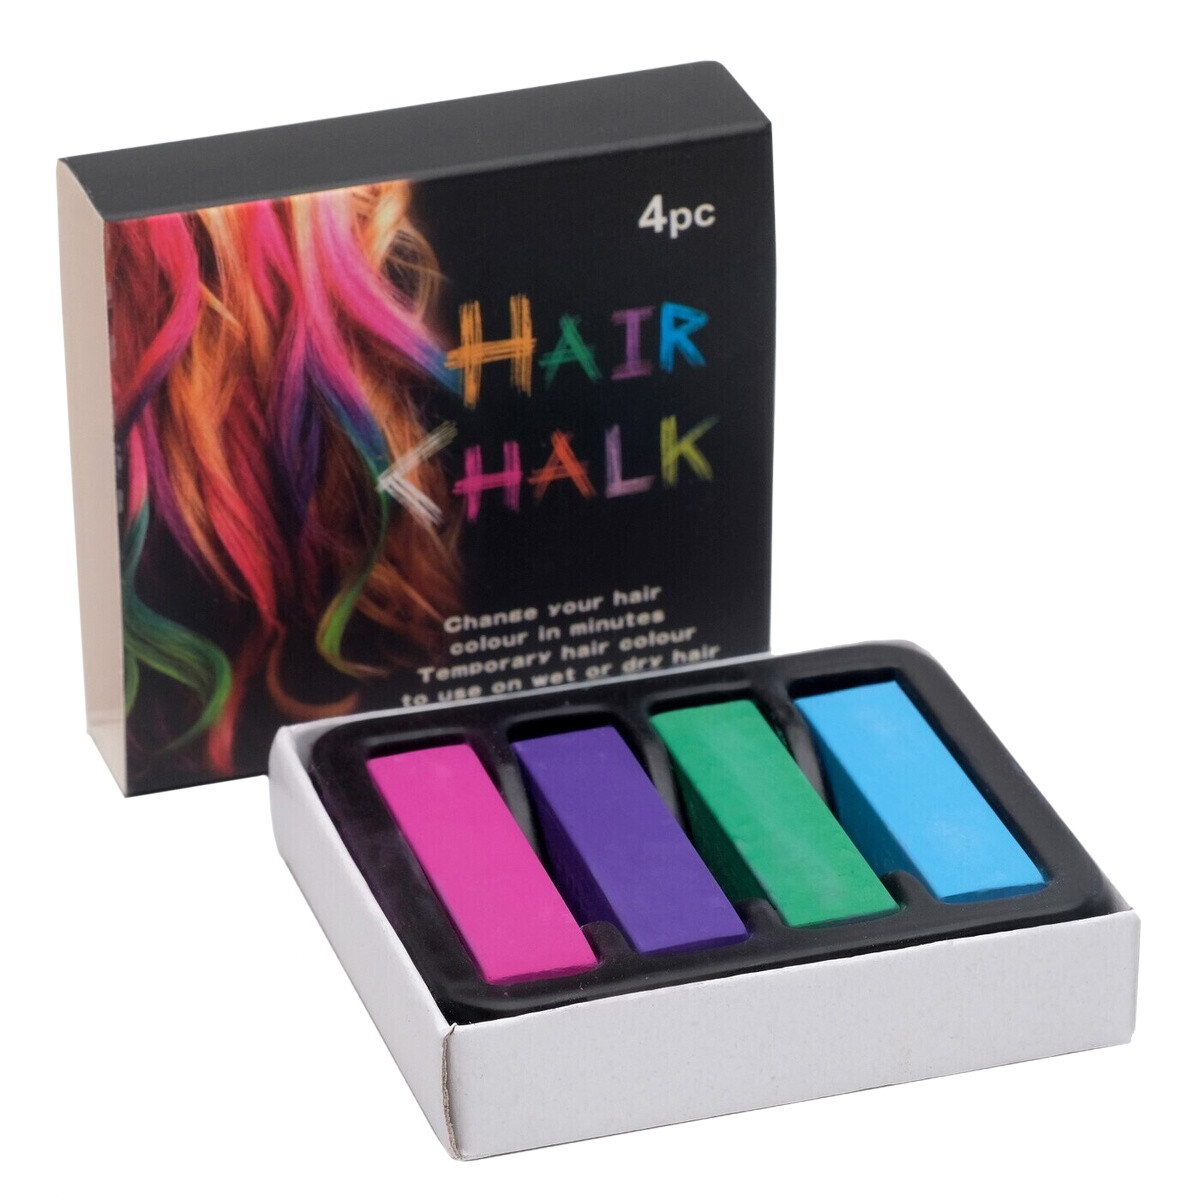 Цветные мелки для волос HairChalkin, набор 4 штук тантра правой руки практики осознанности